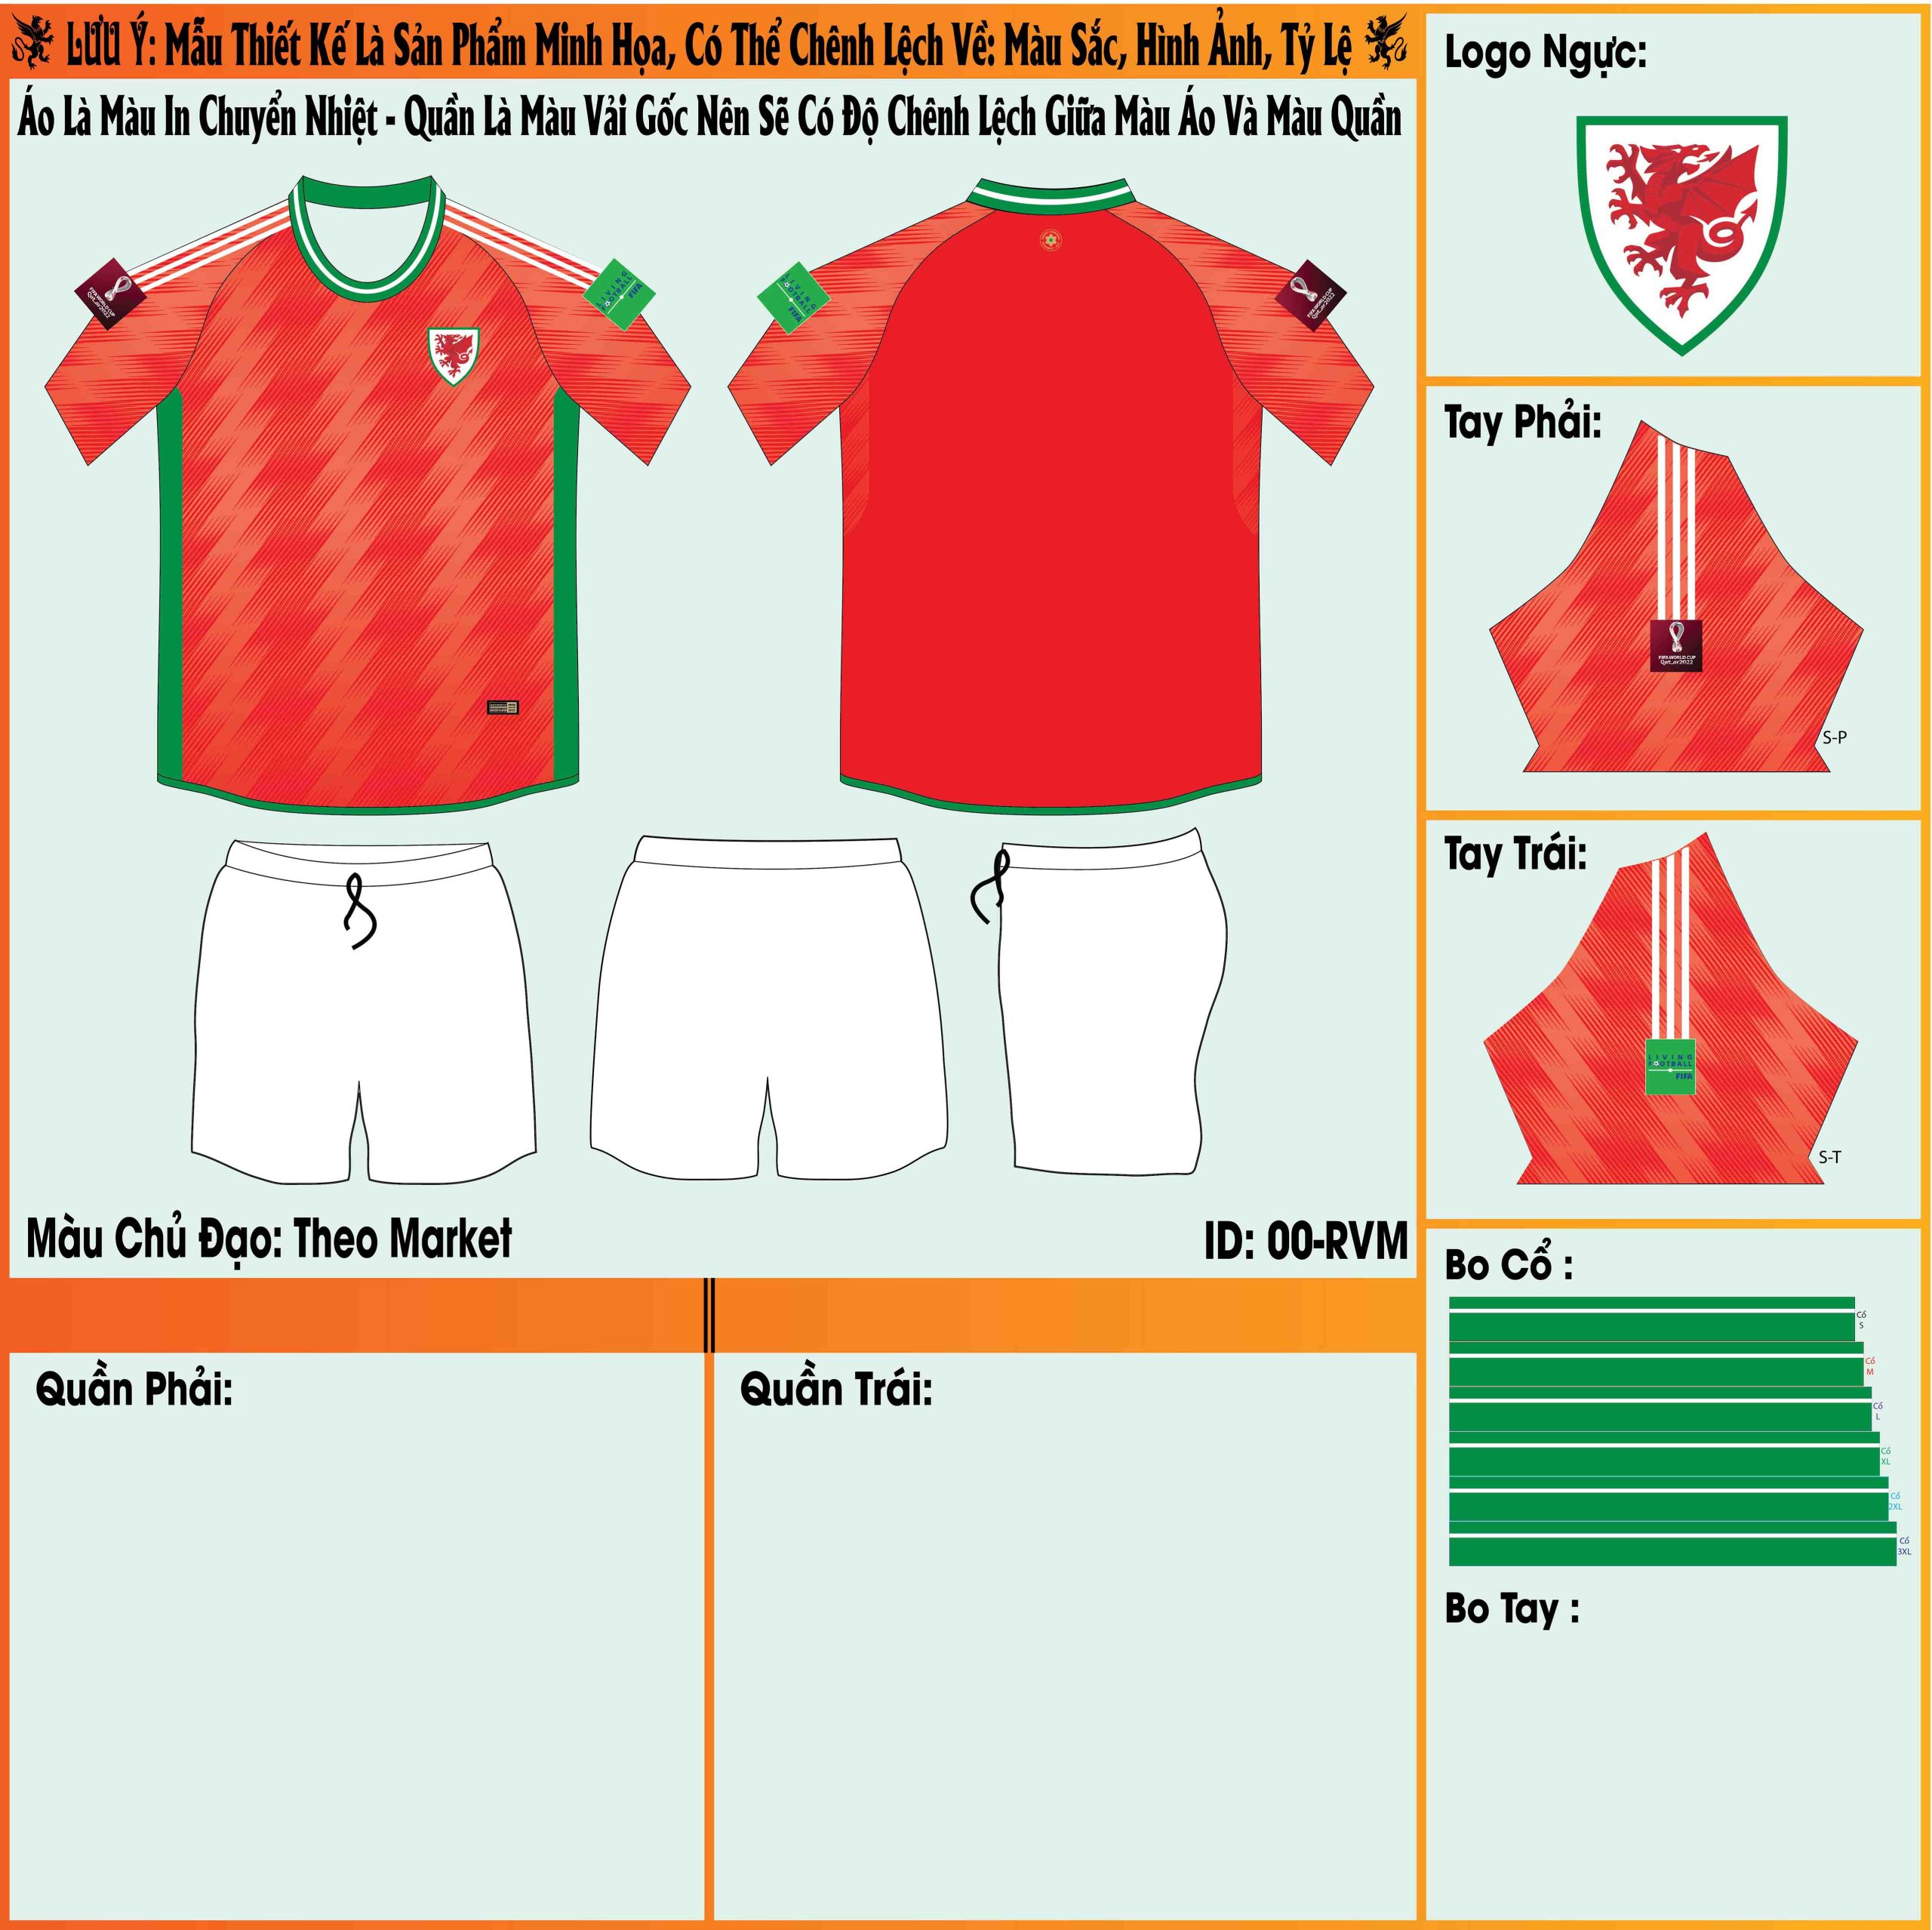 Mẫu market áo đội tuyển Wales sân nhà World Cup 2022 chính thức ra mắt với người hâm mộ bởi phiên bản màu đỏ rực rỡ kết hợp cùng màu cam của họa tiết trên áo để tạo nên một thiết kế hoàn chỉnh, thu hút. 